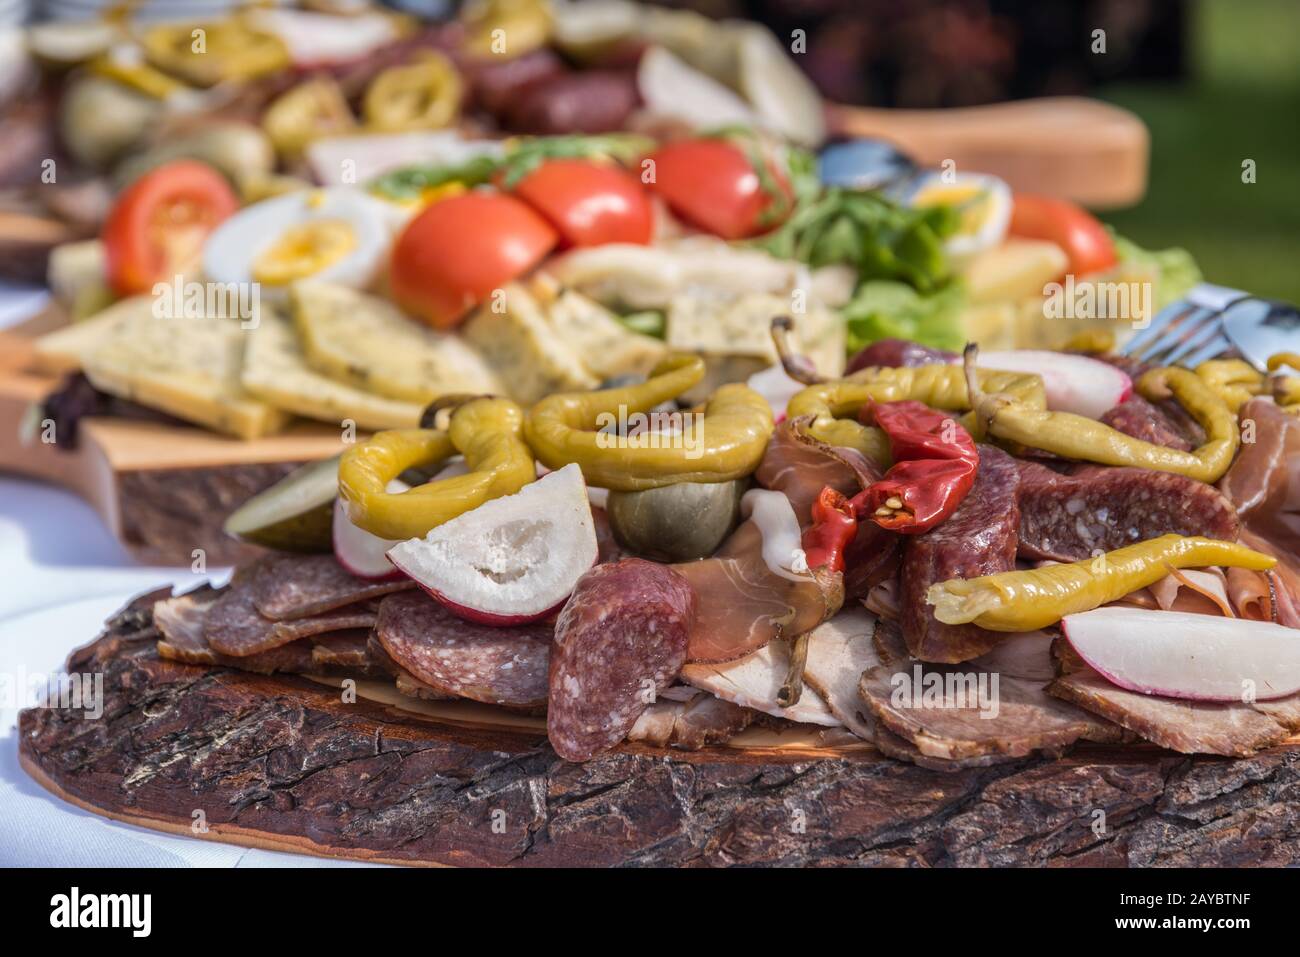 Abwechslungsreiches Essen - rustikale kalte Platte - Buffet Stockfoto